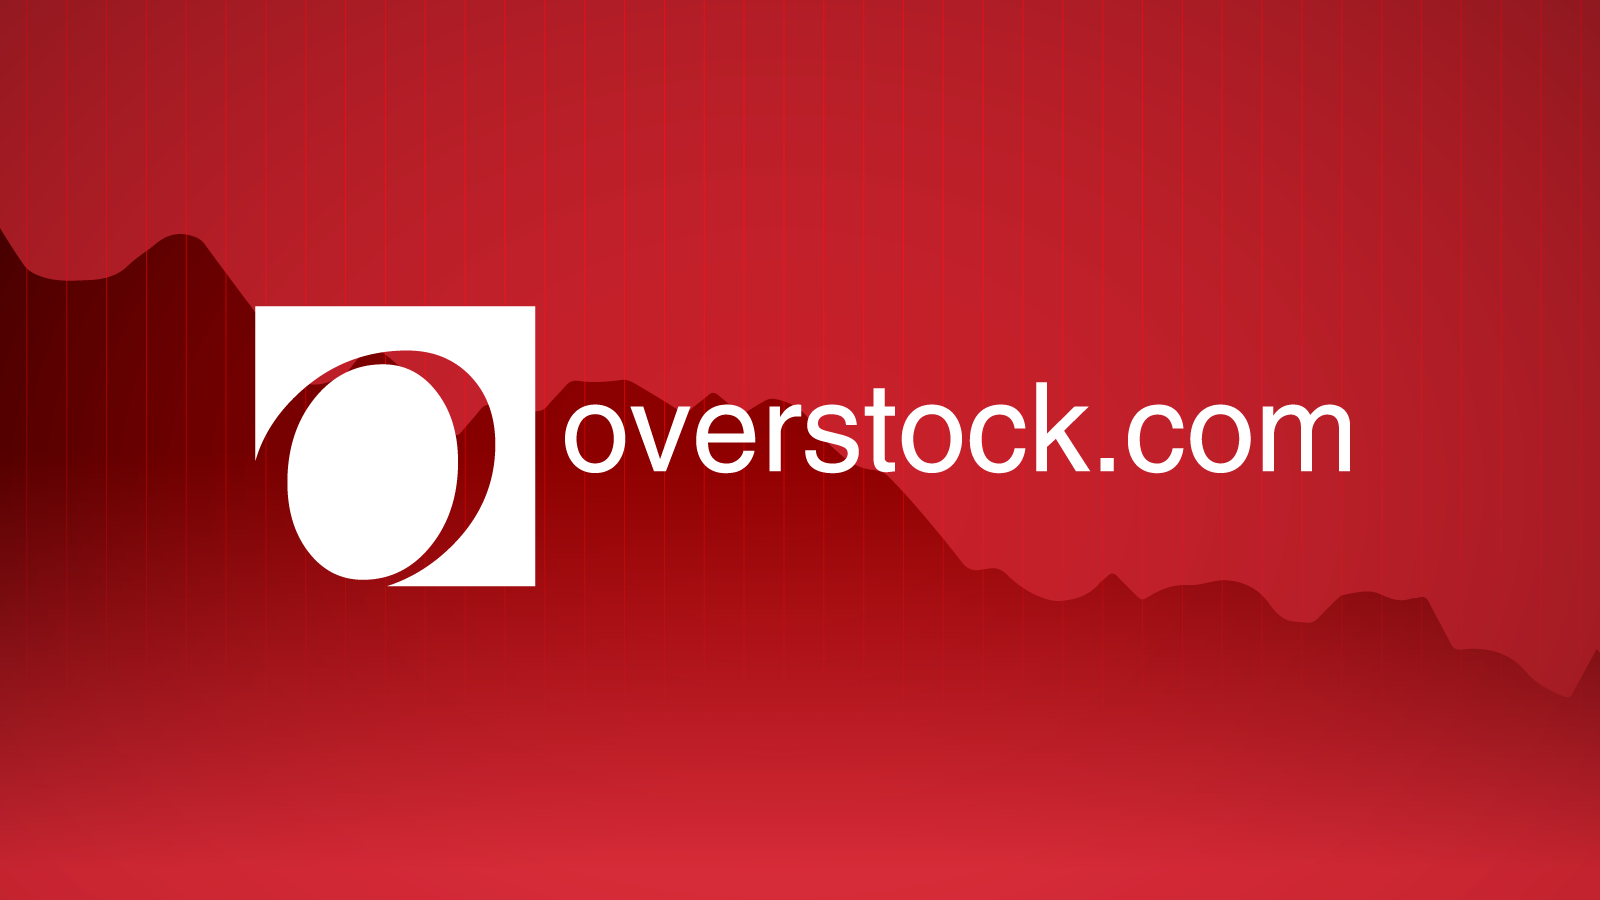 overstock.com down 6% on 3rd-quarter earnings | techcrunch